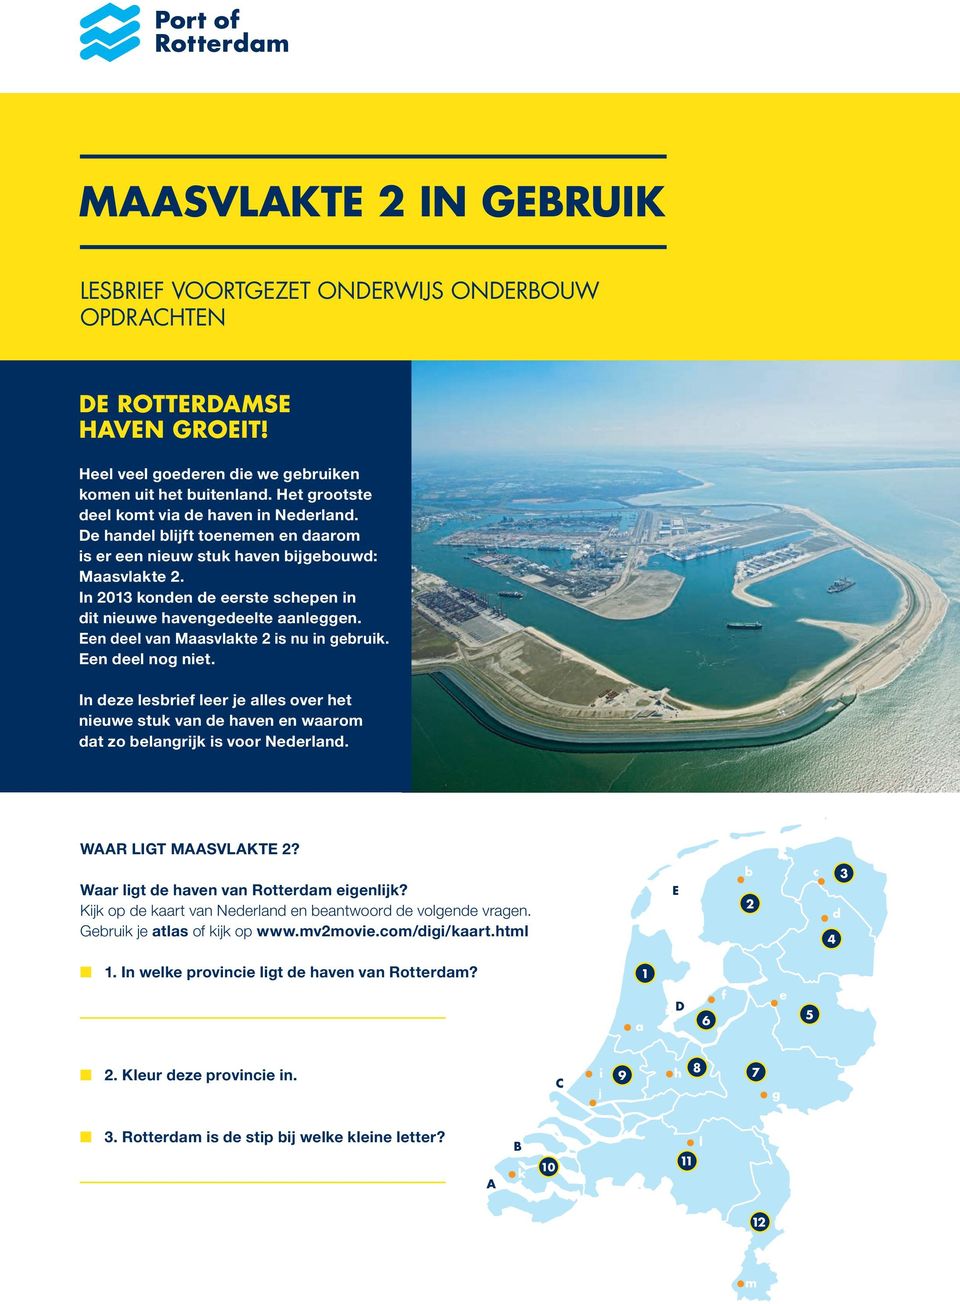 In 2013 konden de eerste schepen in dit nieuwe havengedeelte aanleggen. Een deel van Maasvlakte 2 is nu in gebruik. Een deel nog niet.